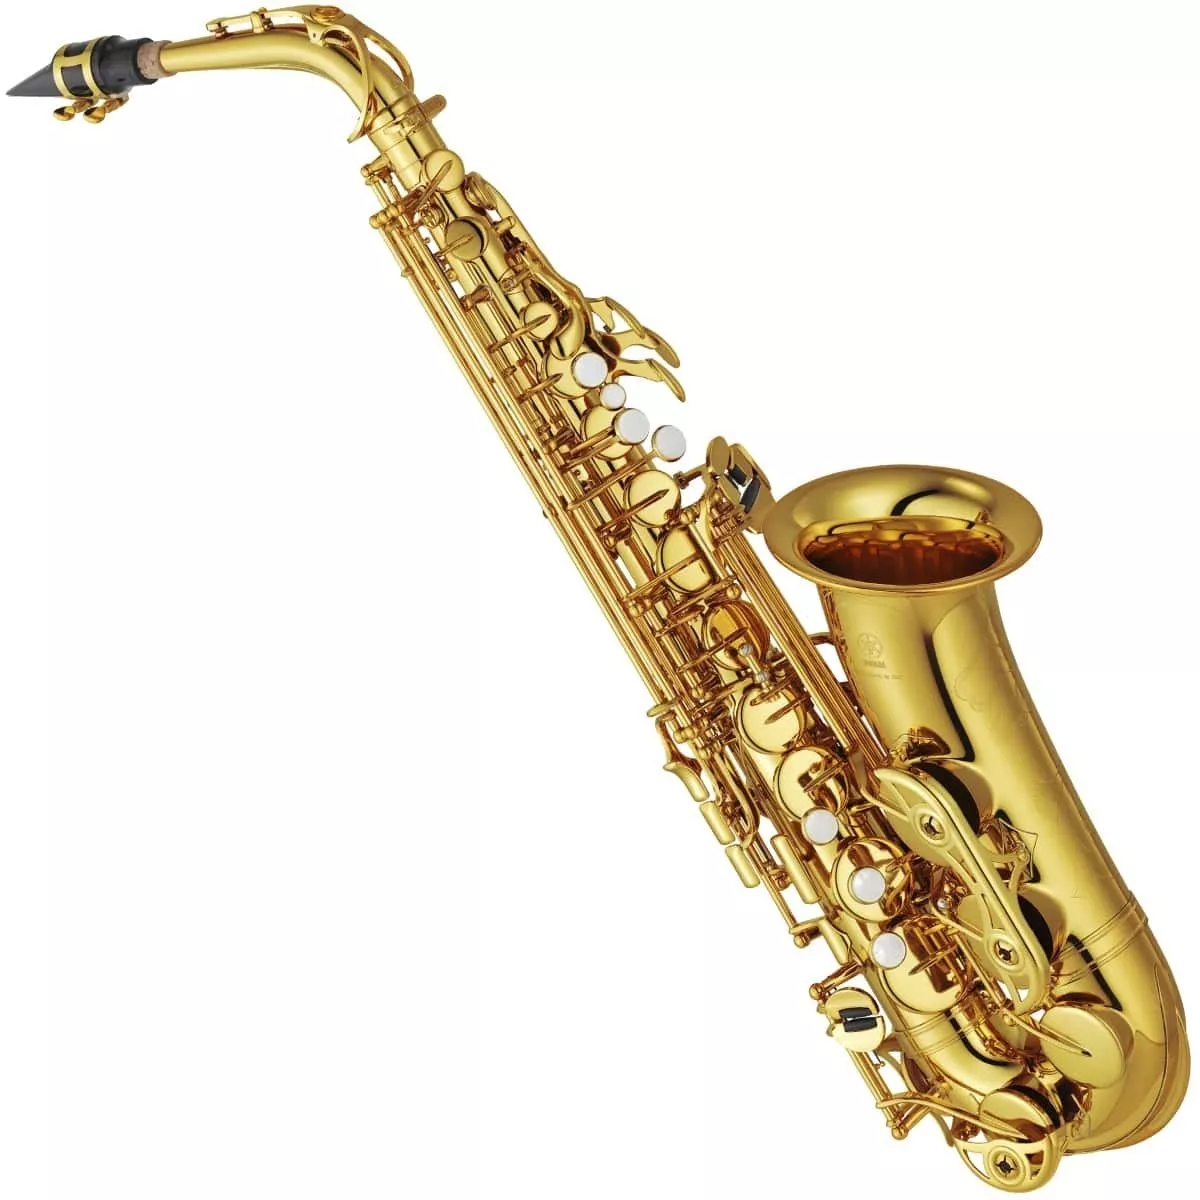 Segunda imagem para pesquisa de sax baritono usado barato saxofones